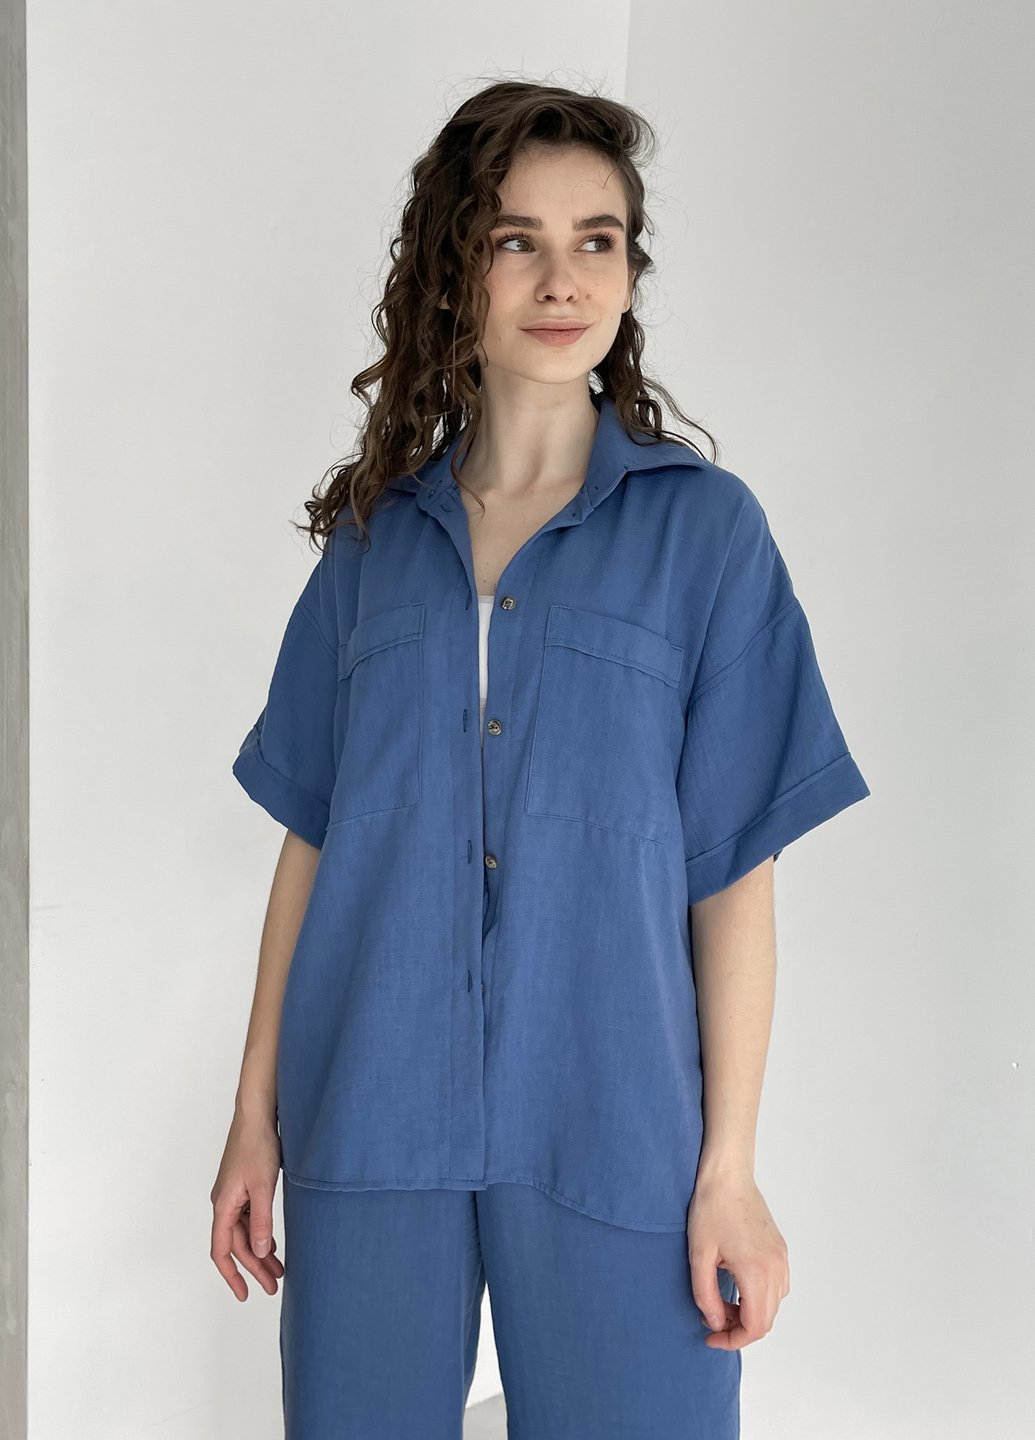 Купити Жіноча льняна сорочка з коротким рукавом синя Merlini Фріулі 200000143, розмір 42-44 в інтернет-магазині